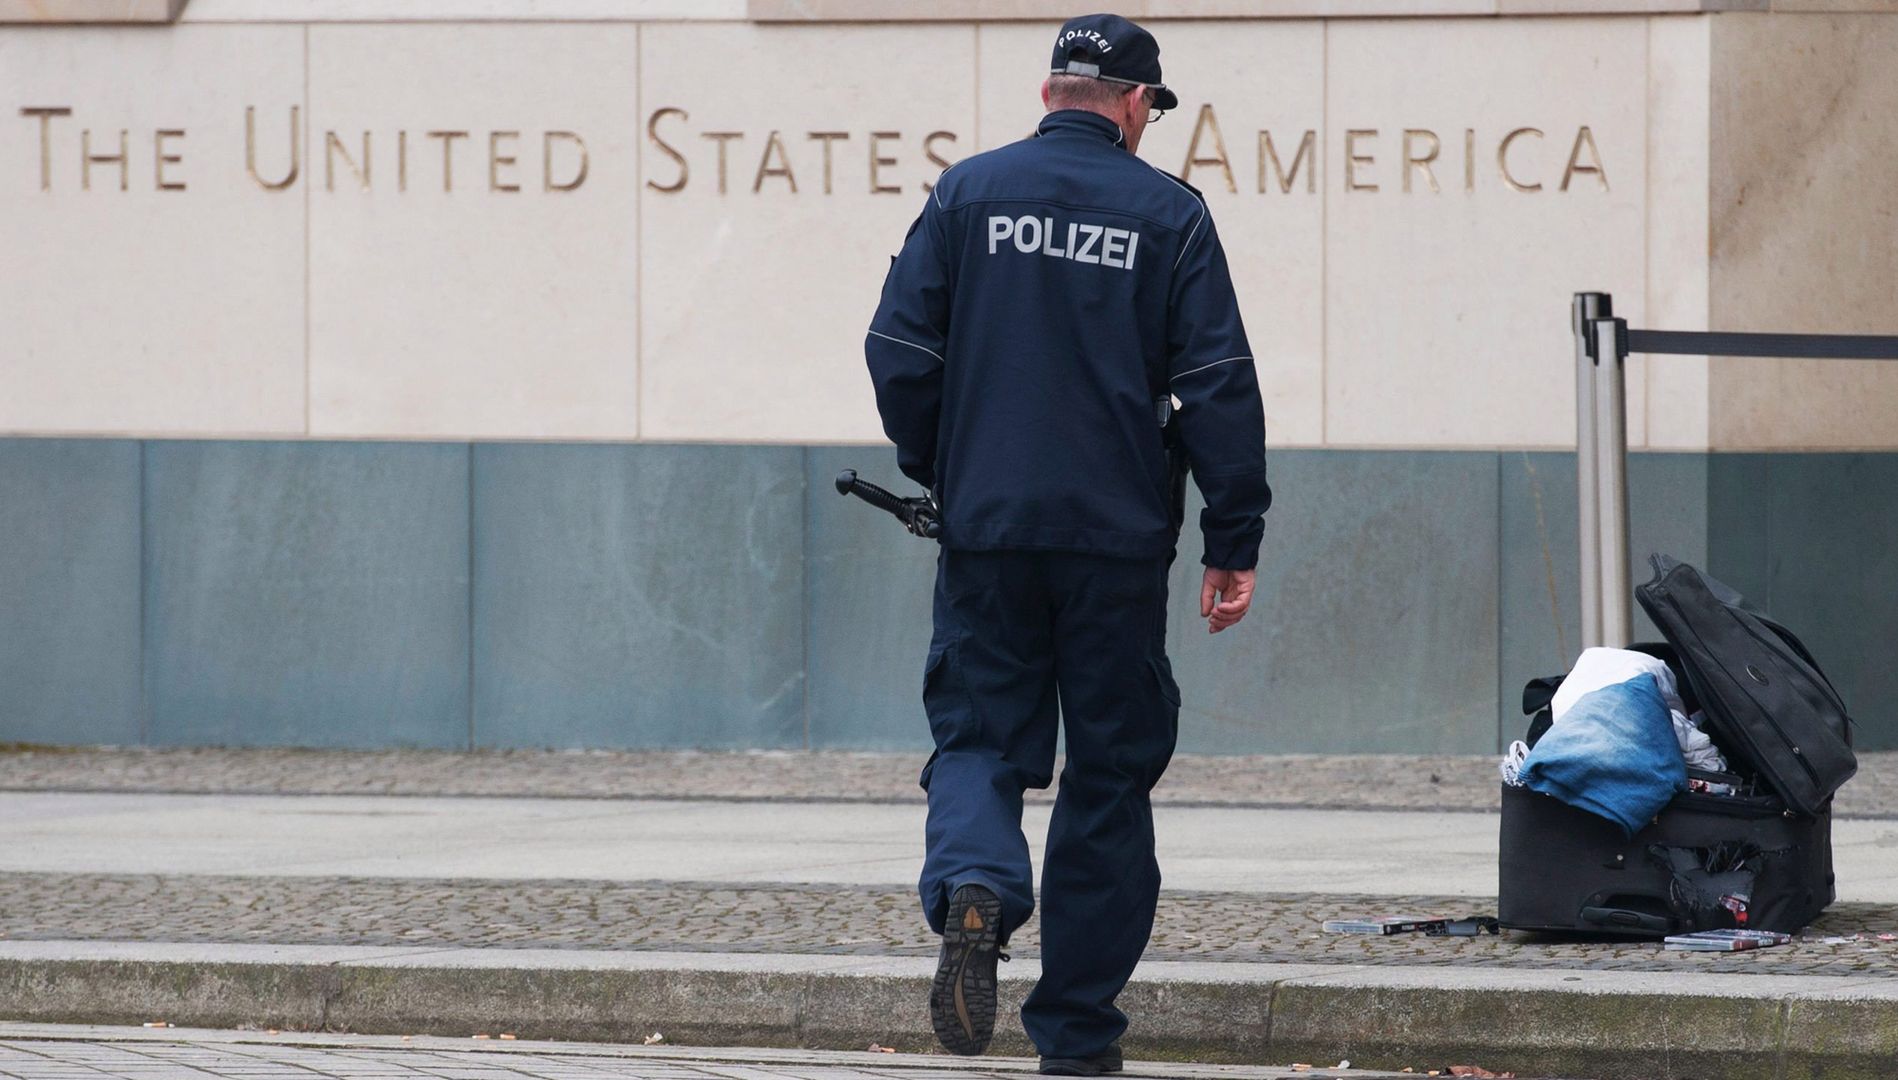 Incydent obok ambasady USA w Berlinie